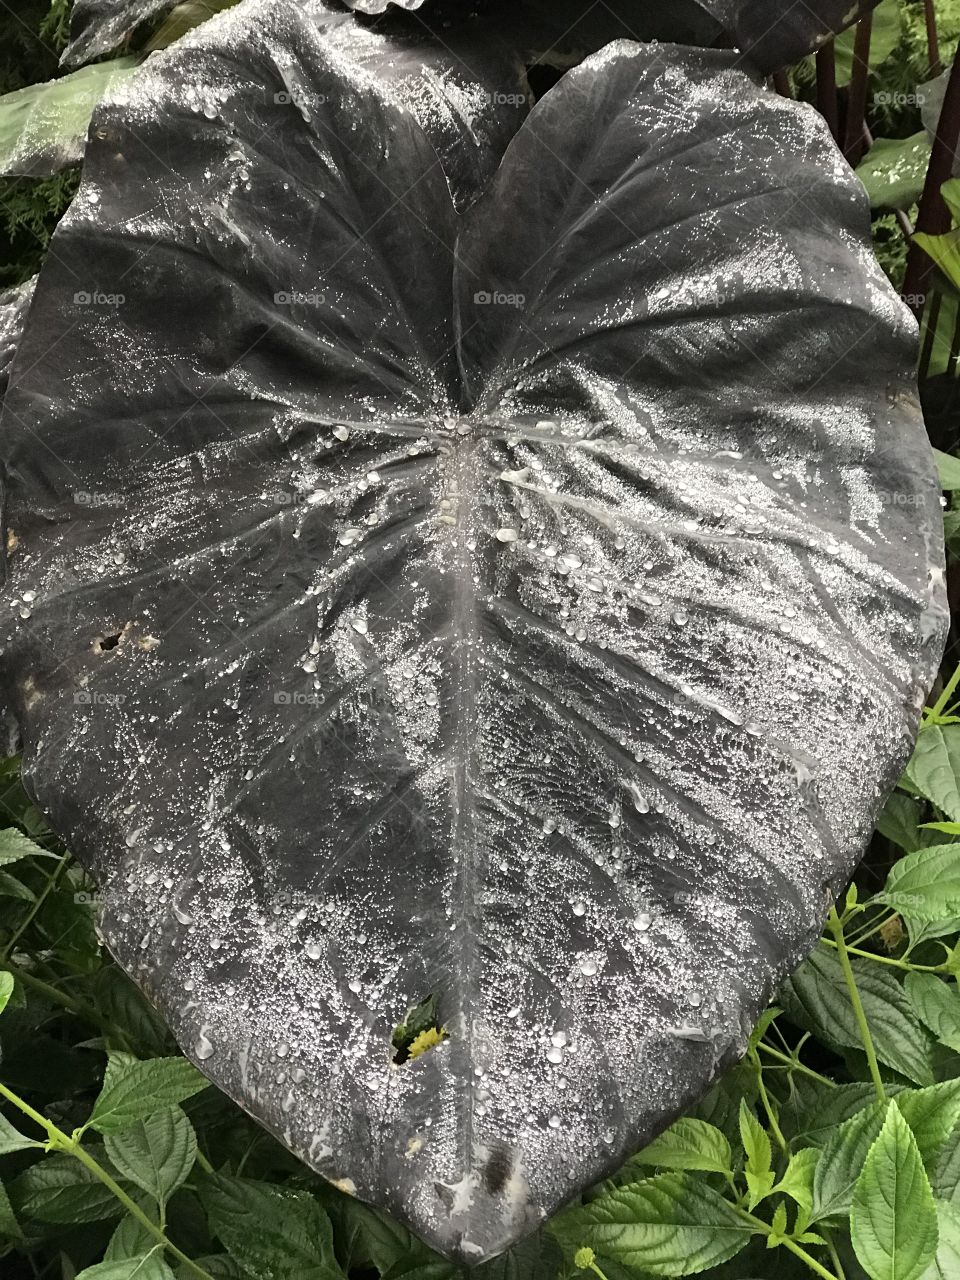 Dark leaf with dew